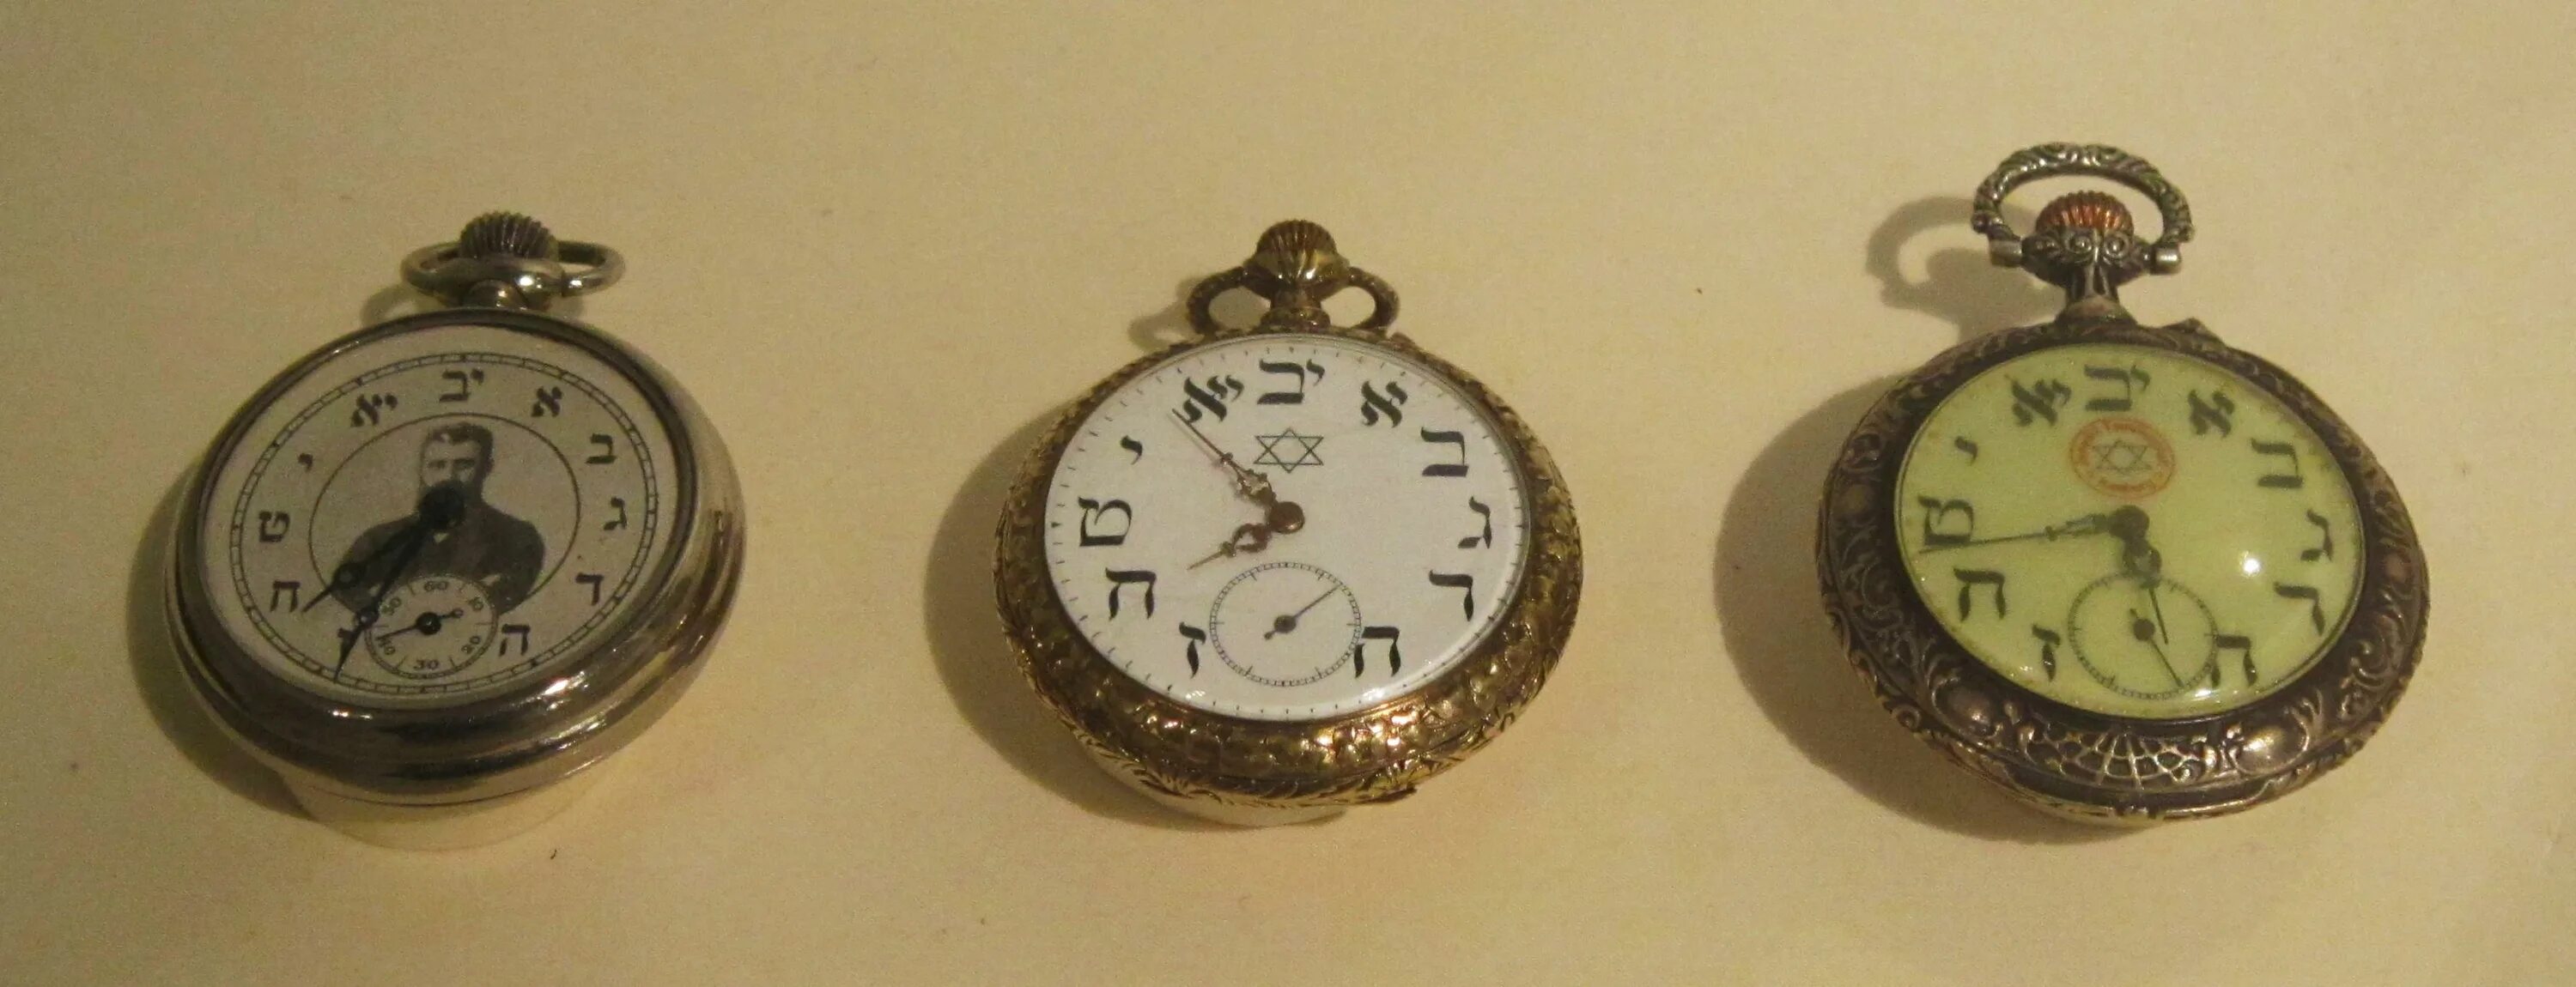 Карманные часы еврейские. Карманные часы с еврейскими цифрами. Еврейские часы наручные. Карманные часы 15 века.